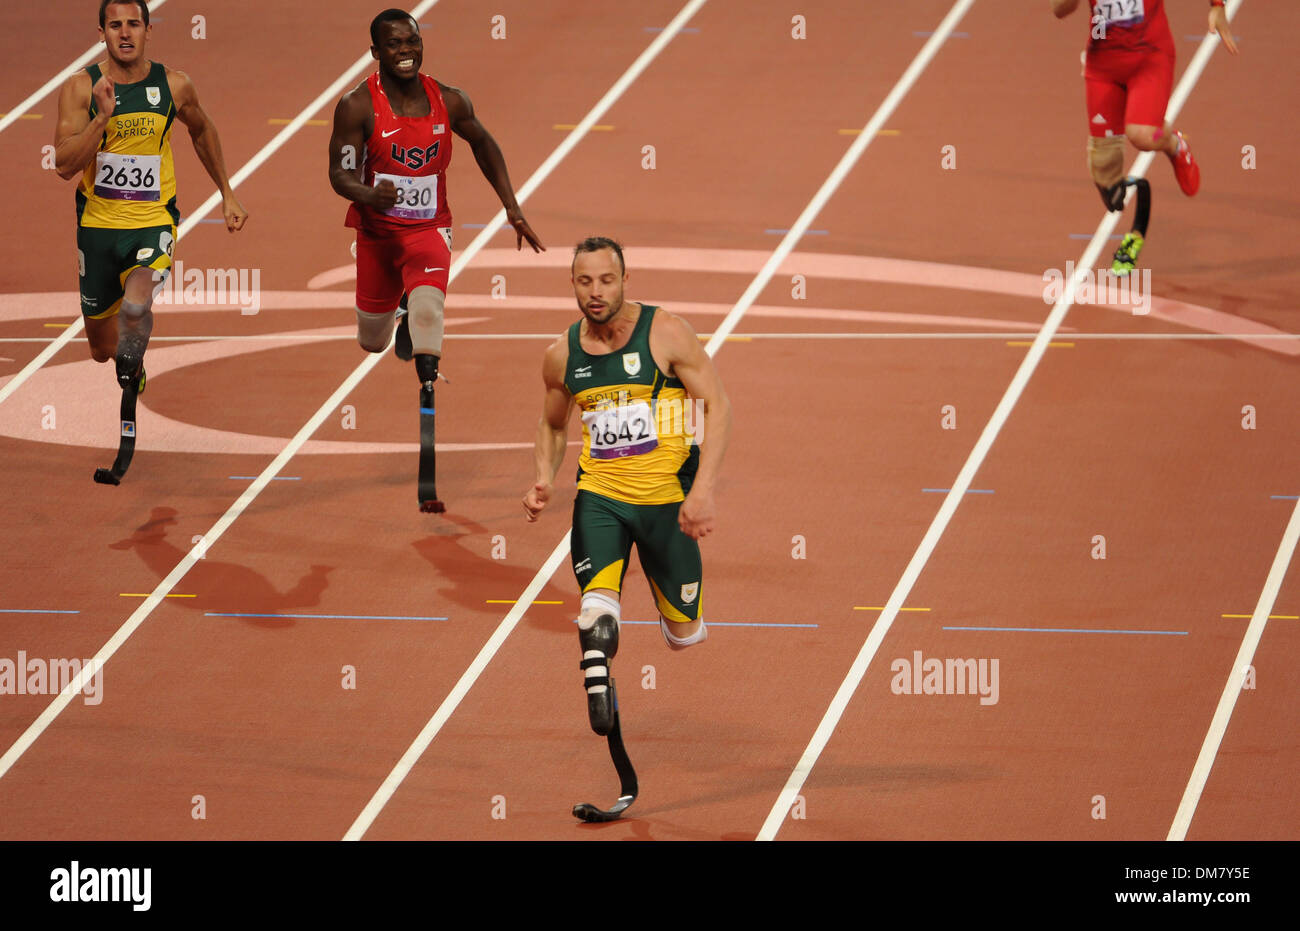 Oscar Pistorius (RSA) (médaille d'argent) Jeux Paralympiques de Londres 2012 - Men's 200m T44 Final - Stade Olympique Londres Angleterre - Banque D'Images